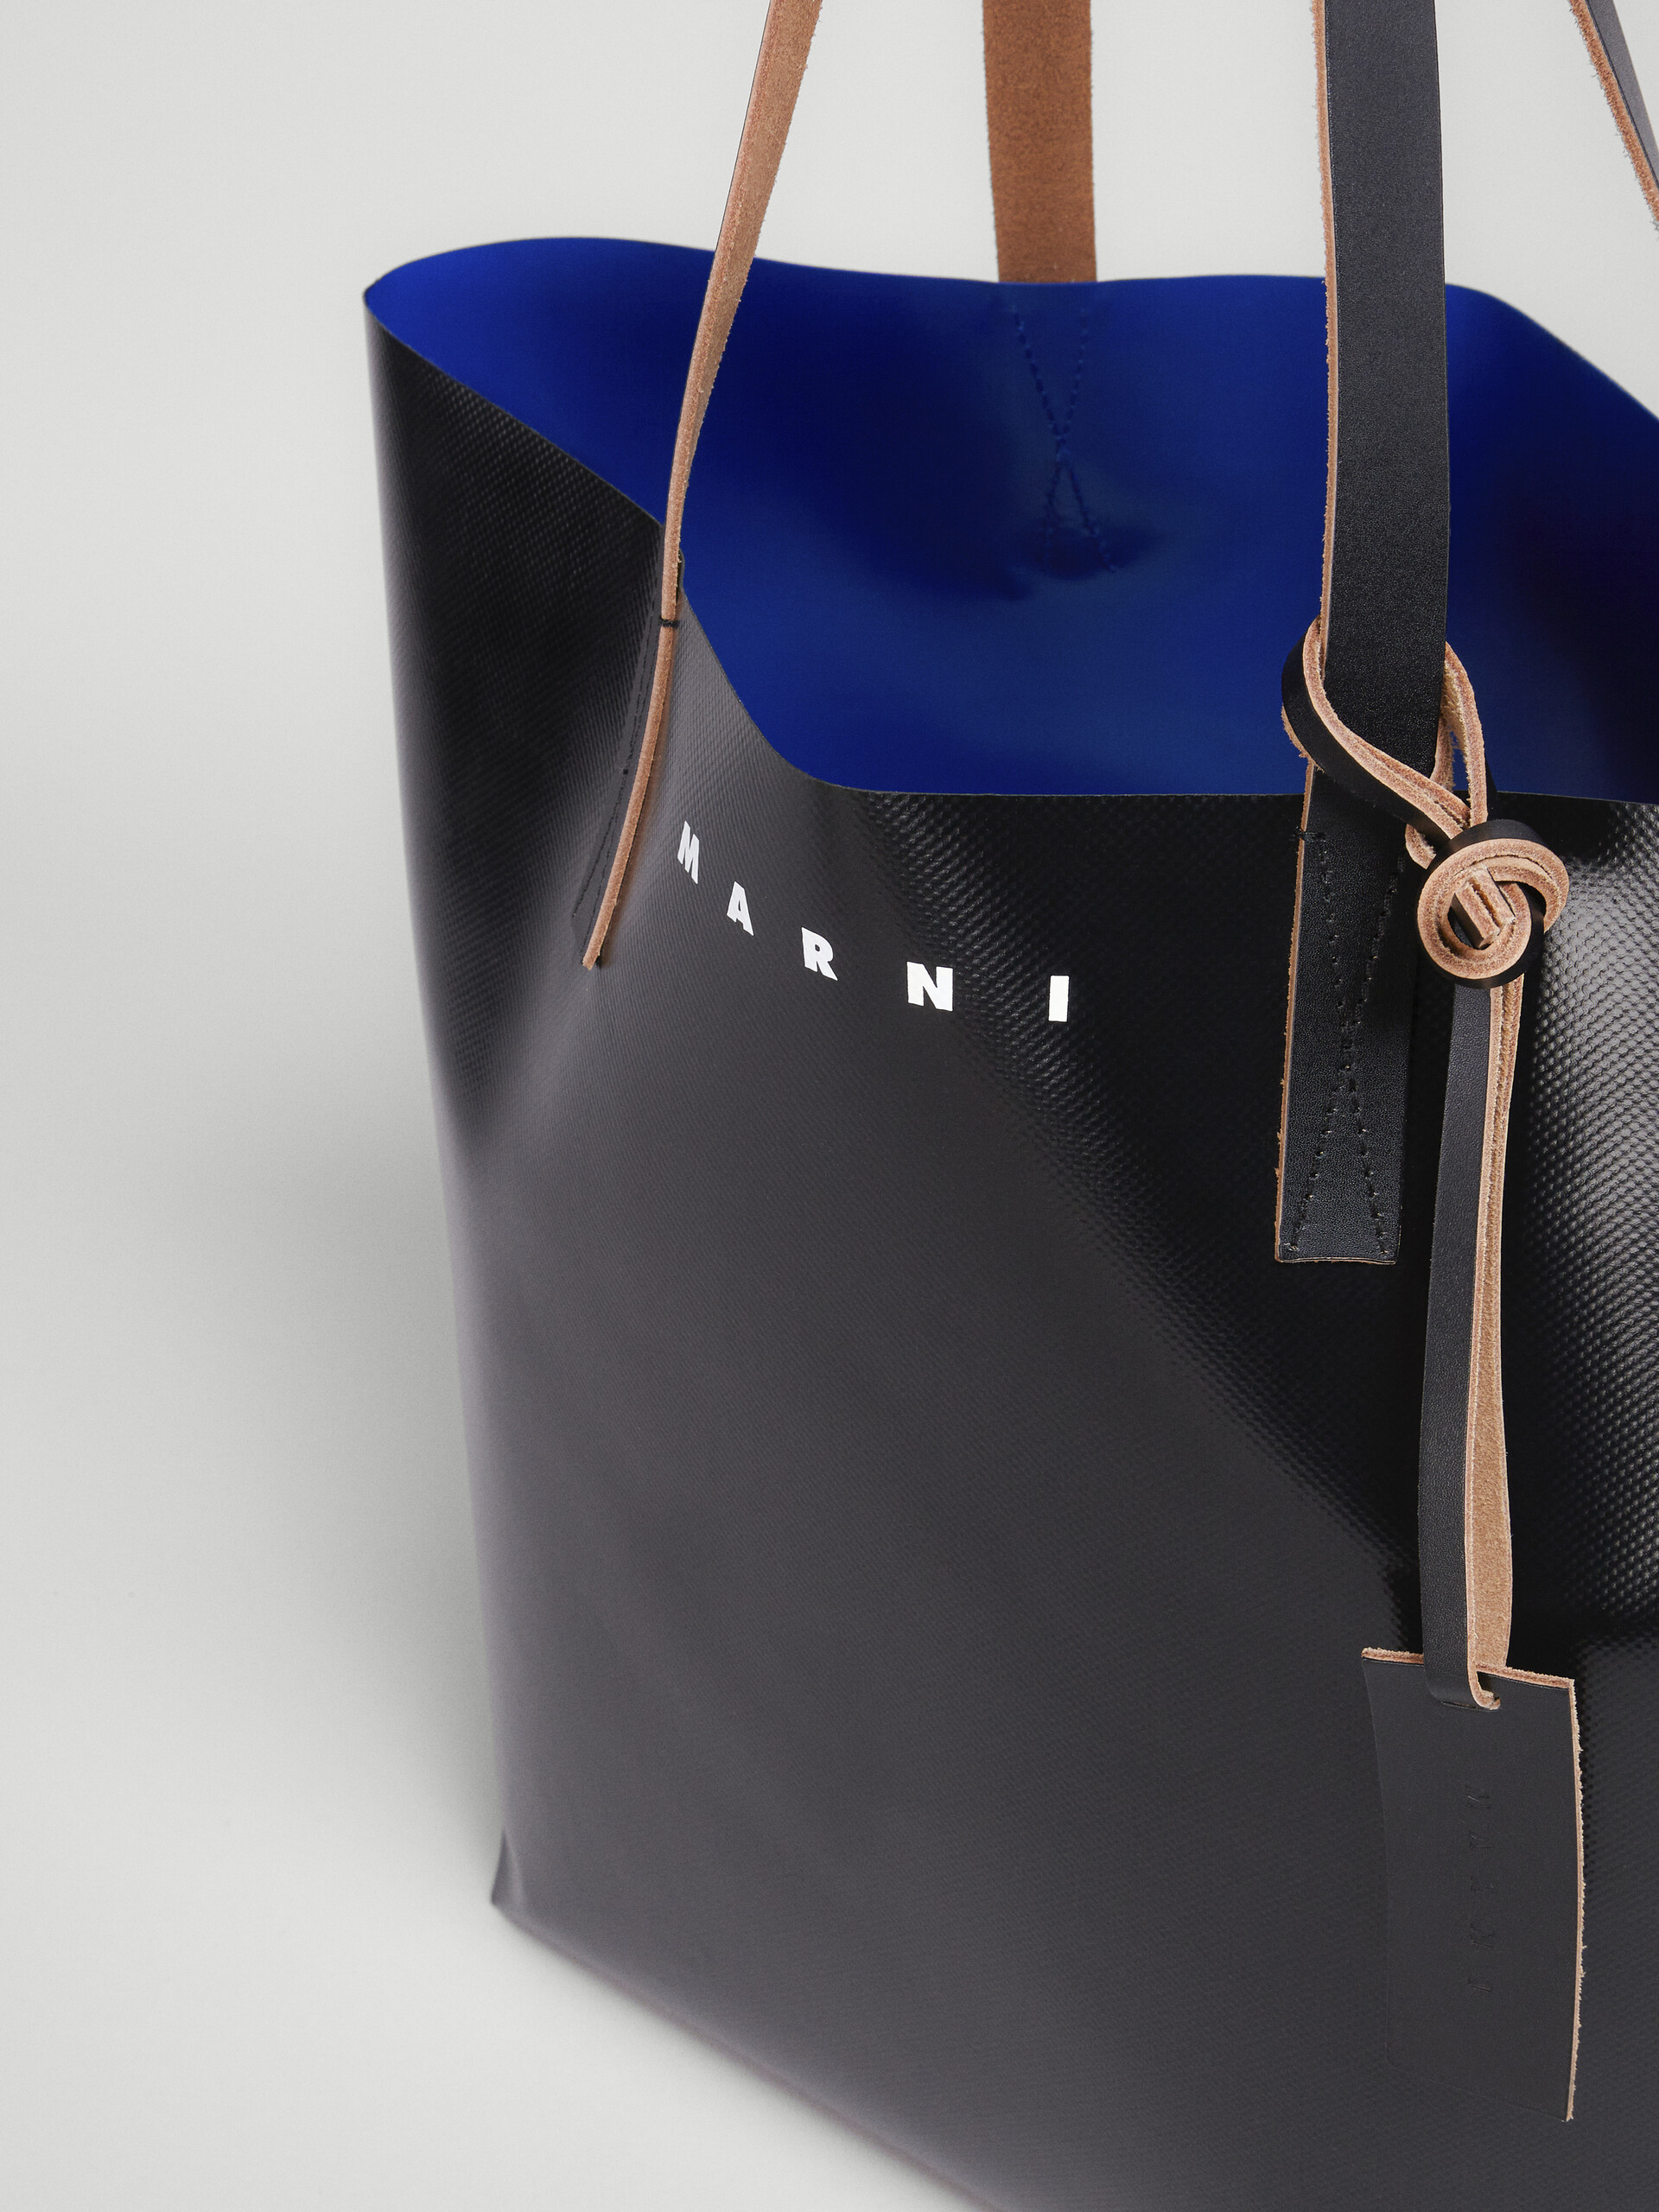 ブラック＆ブルー TRIBECA PVC製ショッピングバッグ